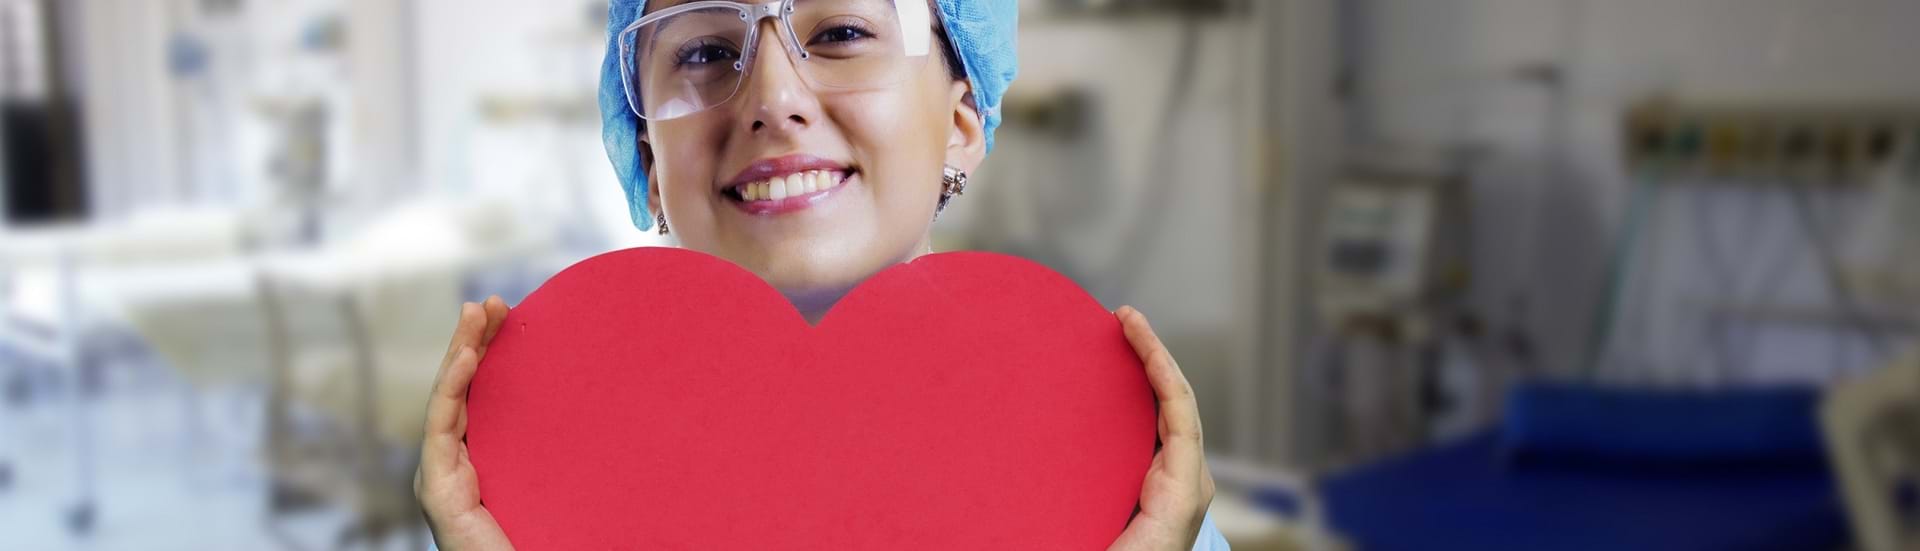 Ung pige i sygeplejeuniform holder et rødt hjerte i hænderne og smiler ind i kameraet.